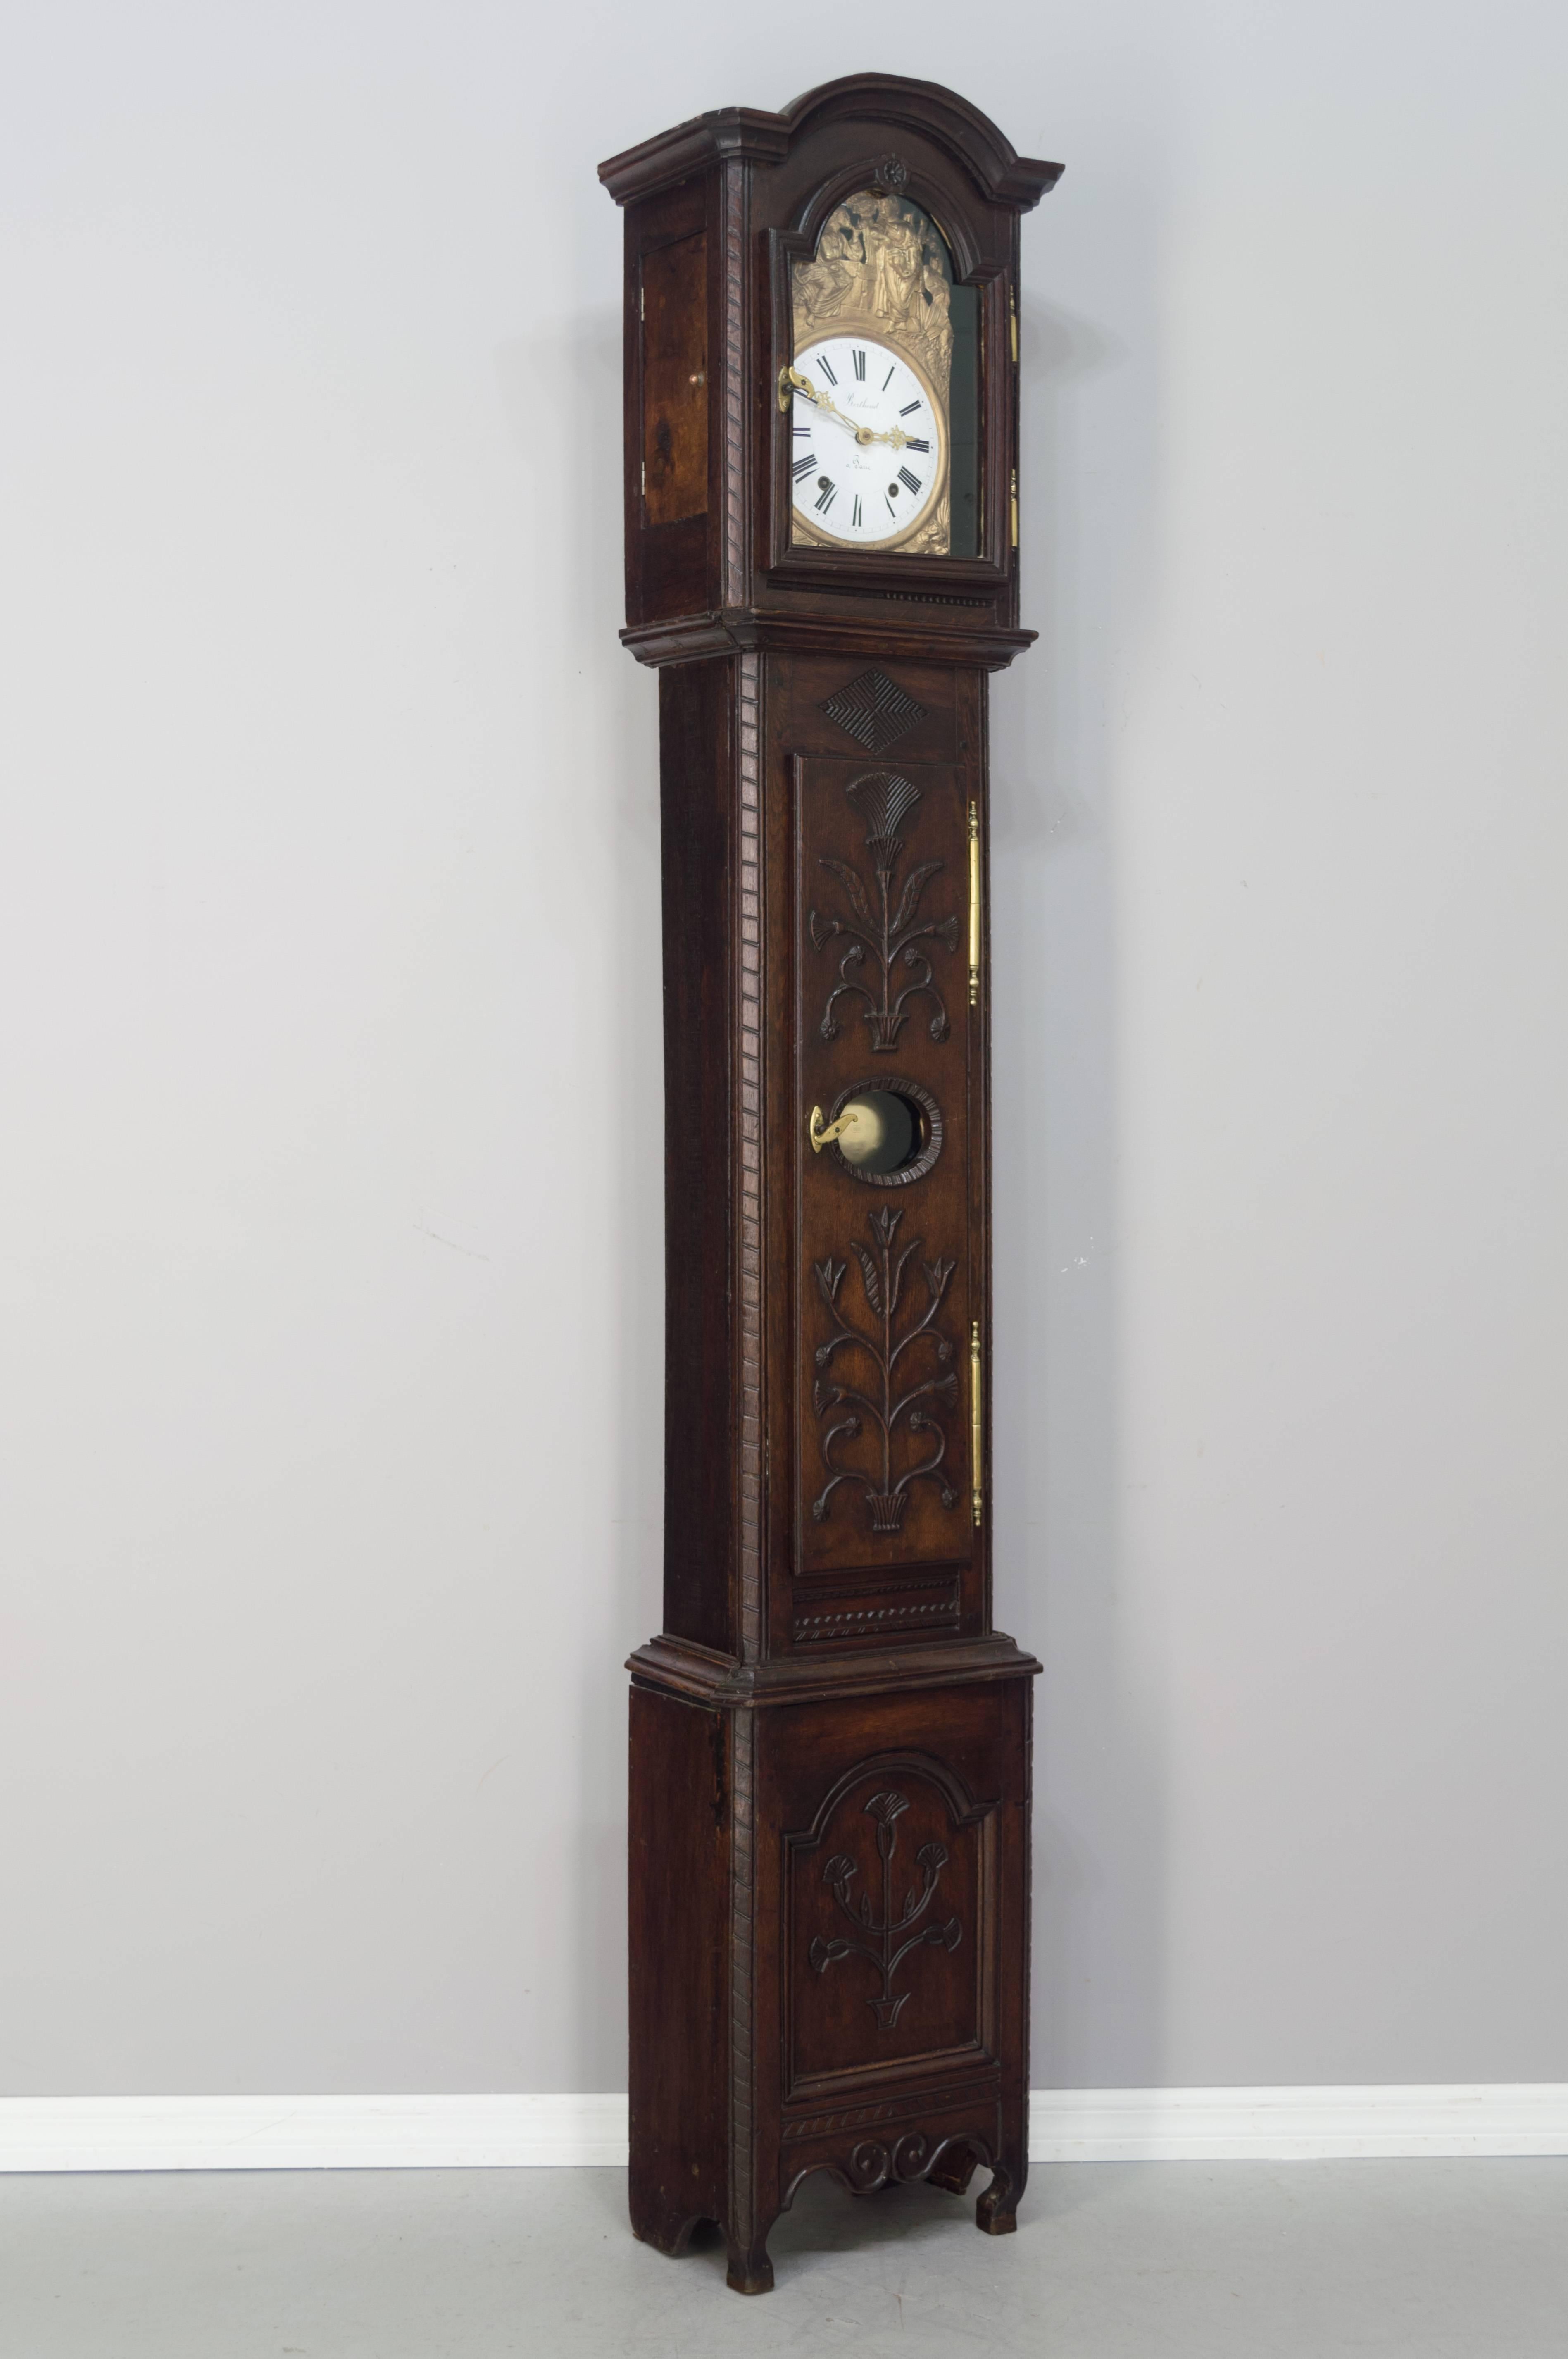 Country horloge française du 18ème siècle à grand boîtier